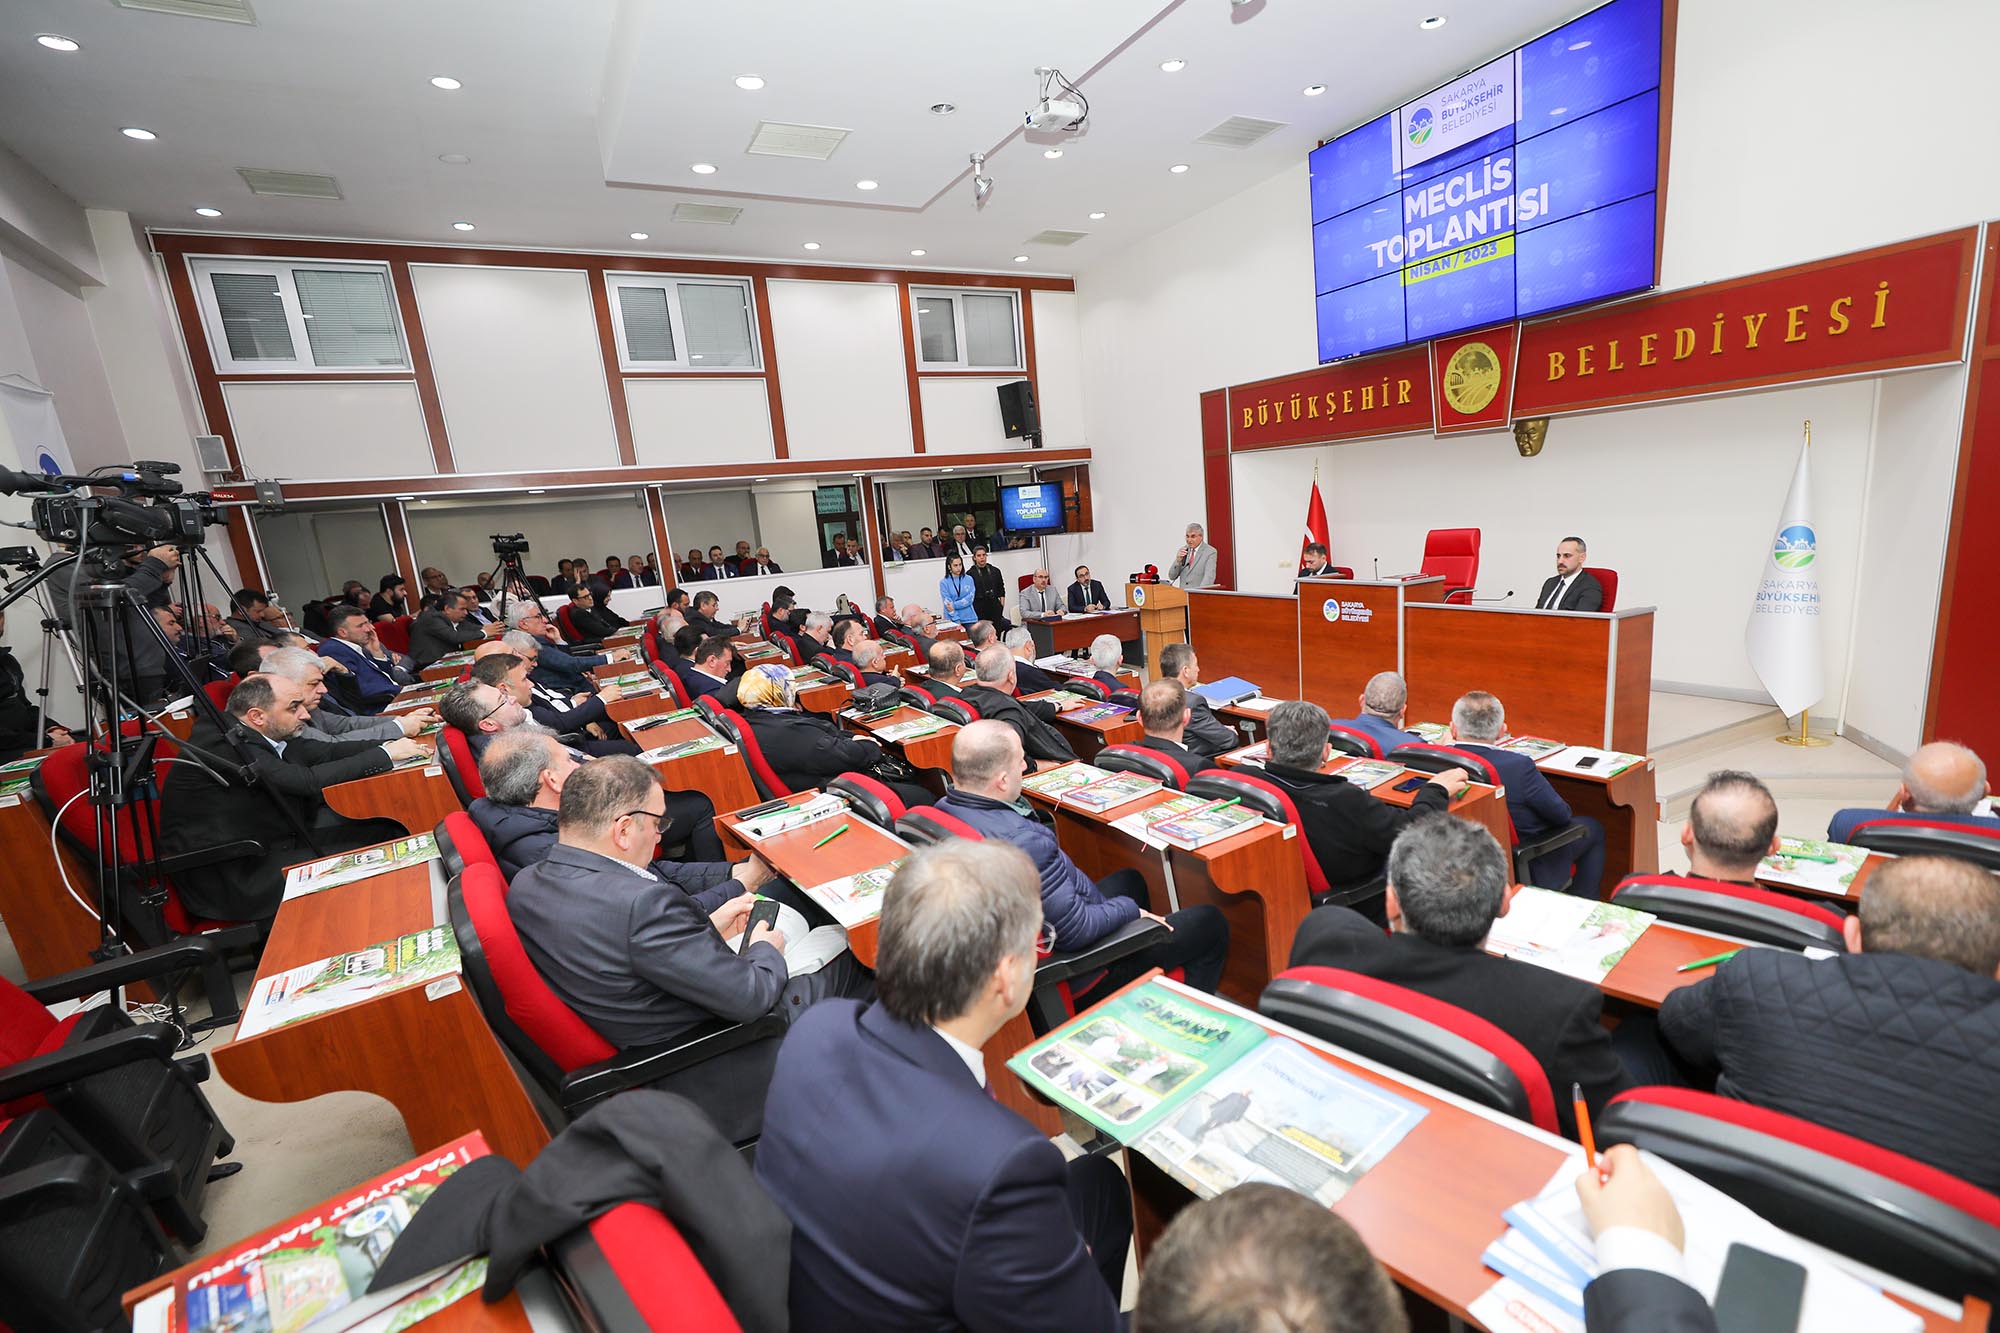 Büyükşehir Mayıs Meclisi toplanıyor: Afet İşleri Daire Başkanlığı kurulacak